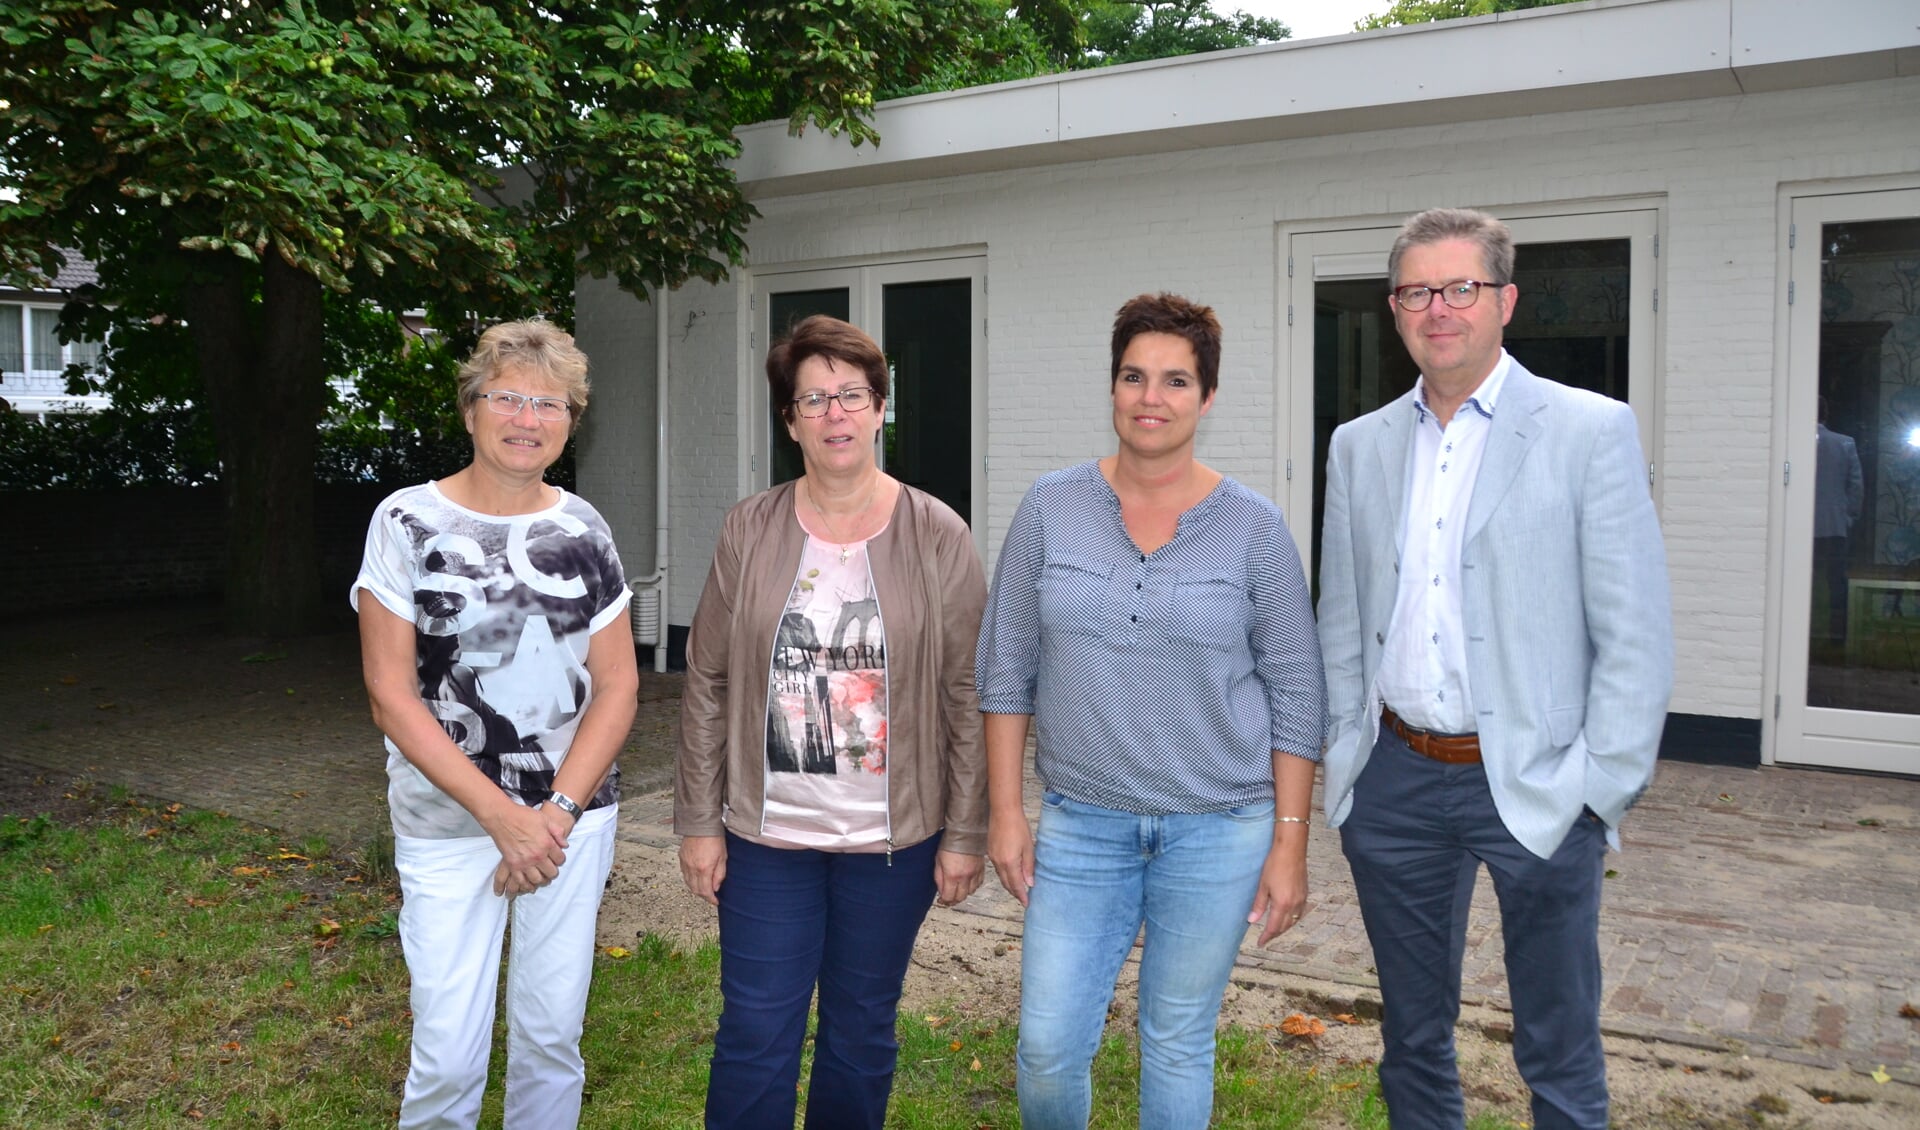 v.l.n.r.: Francien van Berkel, Wilma van Casteren, Ingrid Gevers en Maurice van Osch